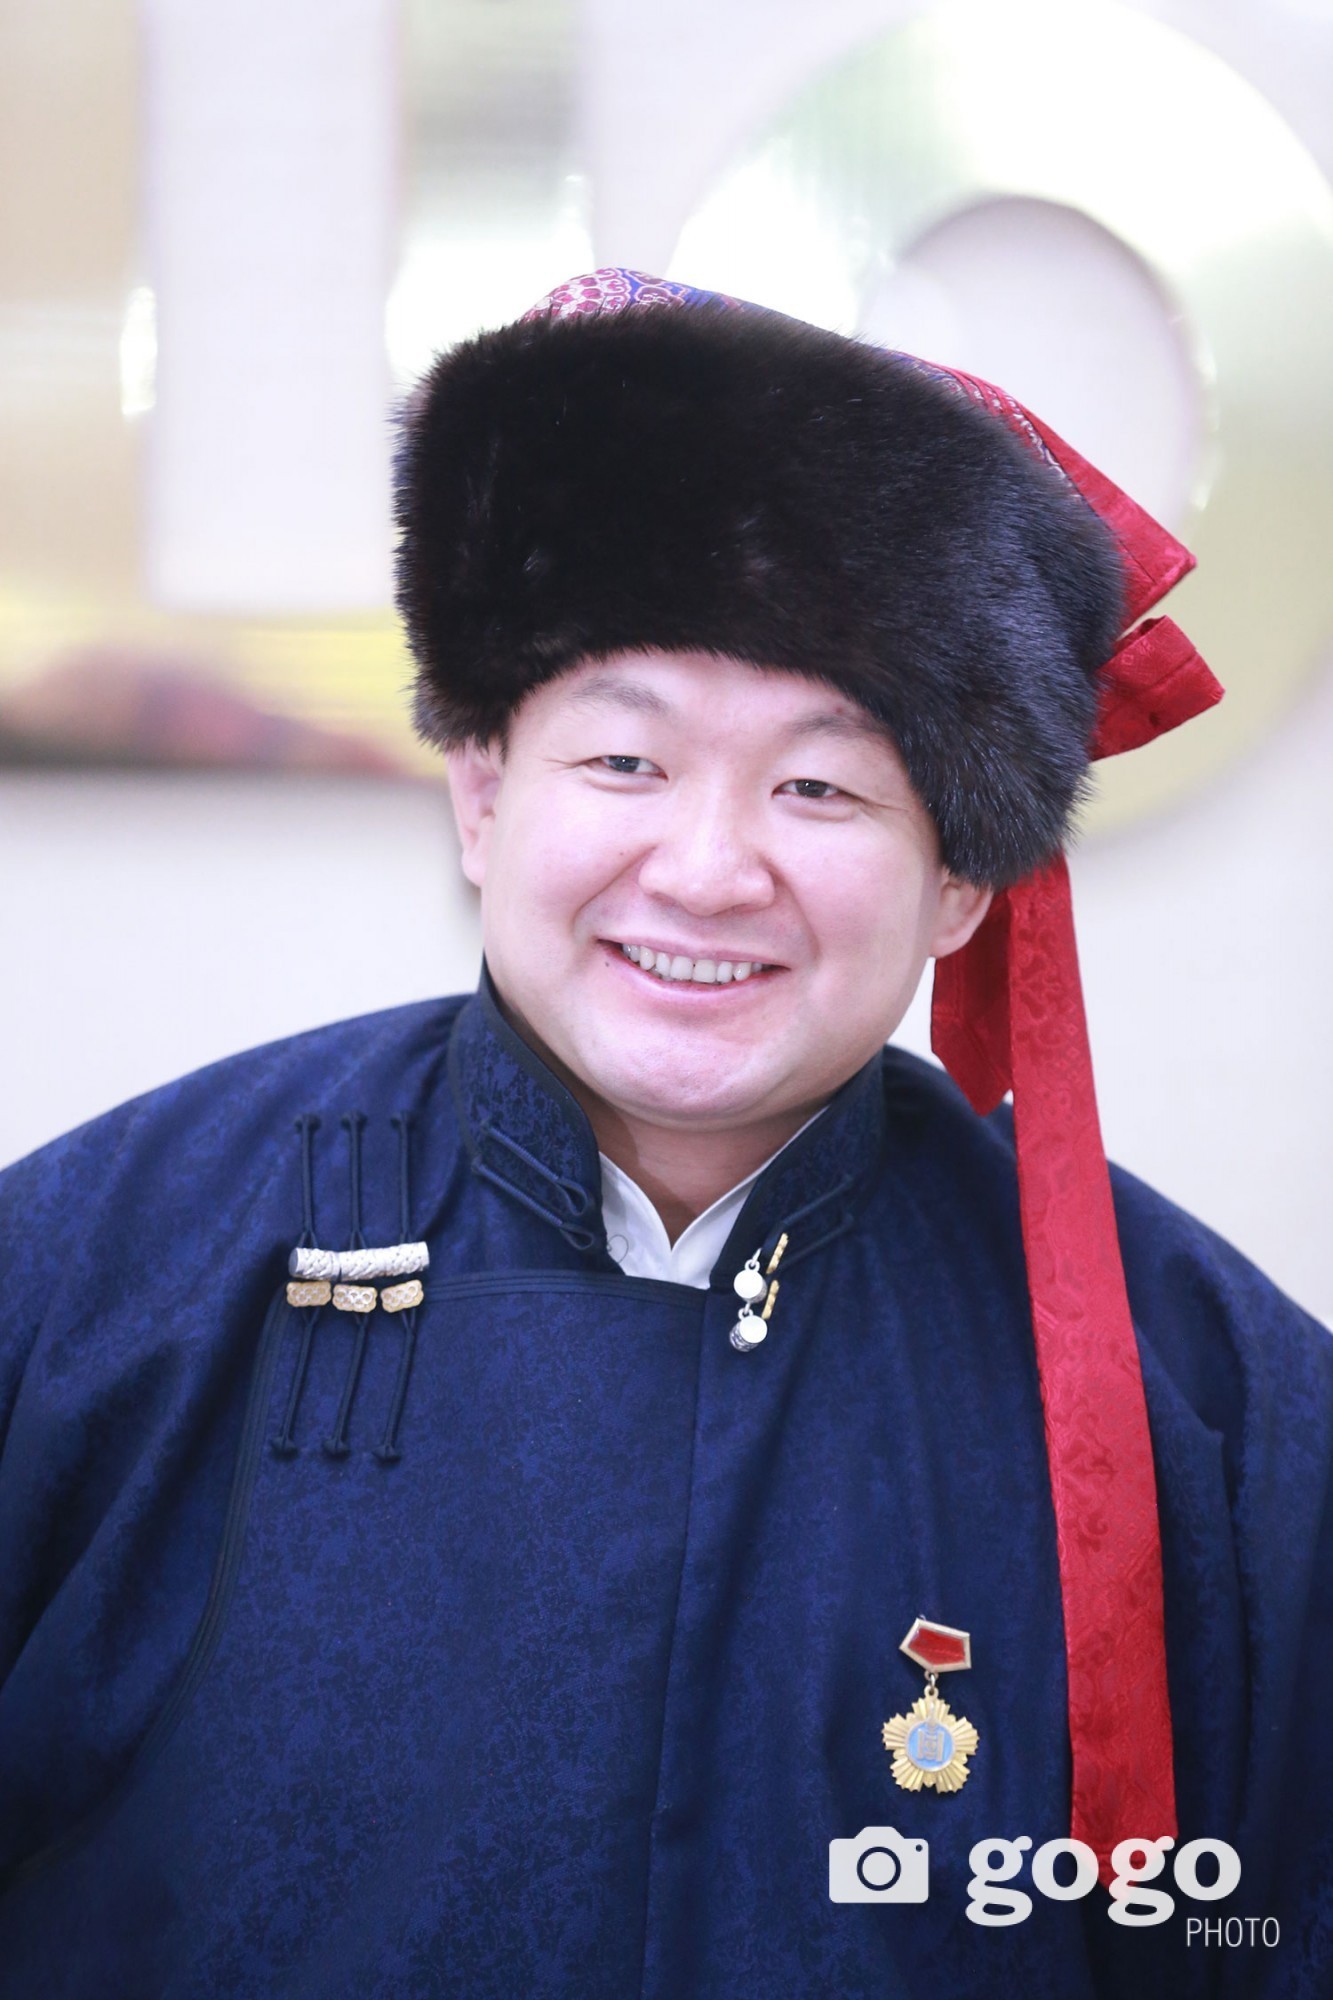 Olympian N.Tuvshinbayar awarded state prize – Chinggis Khaan order